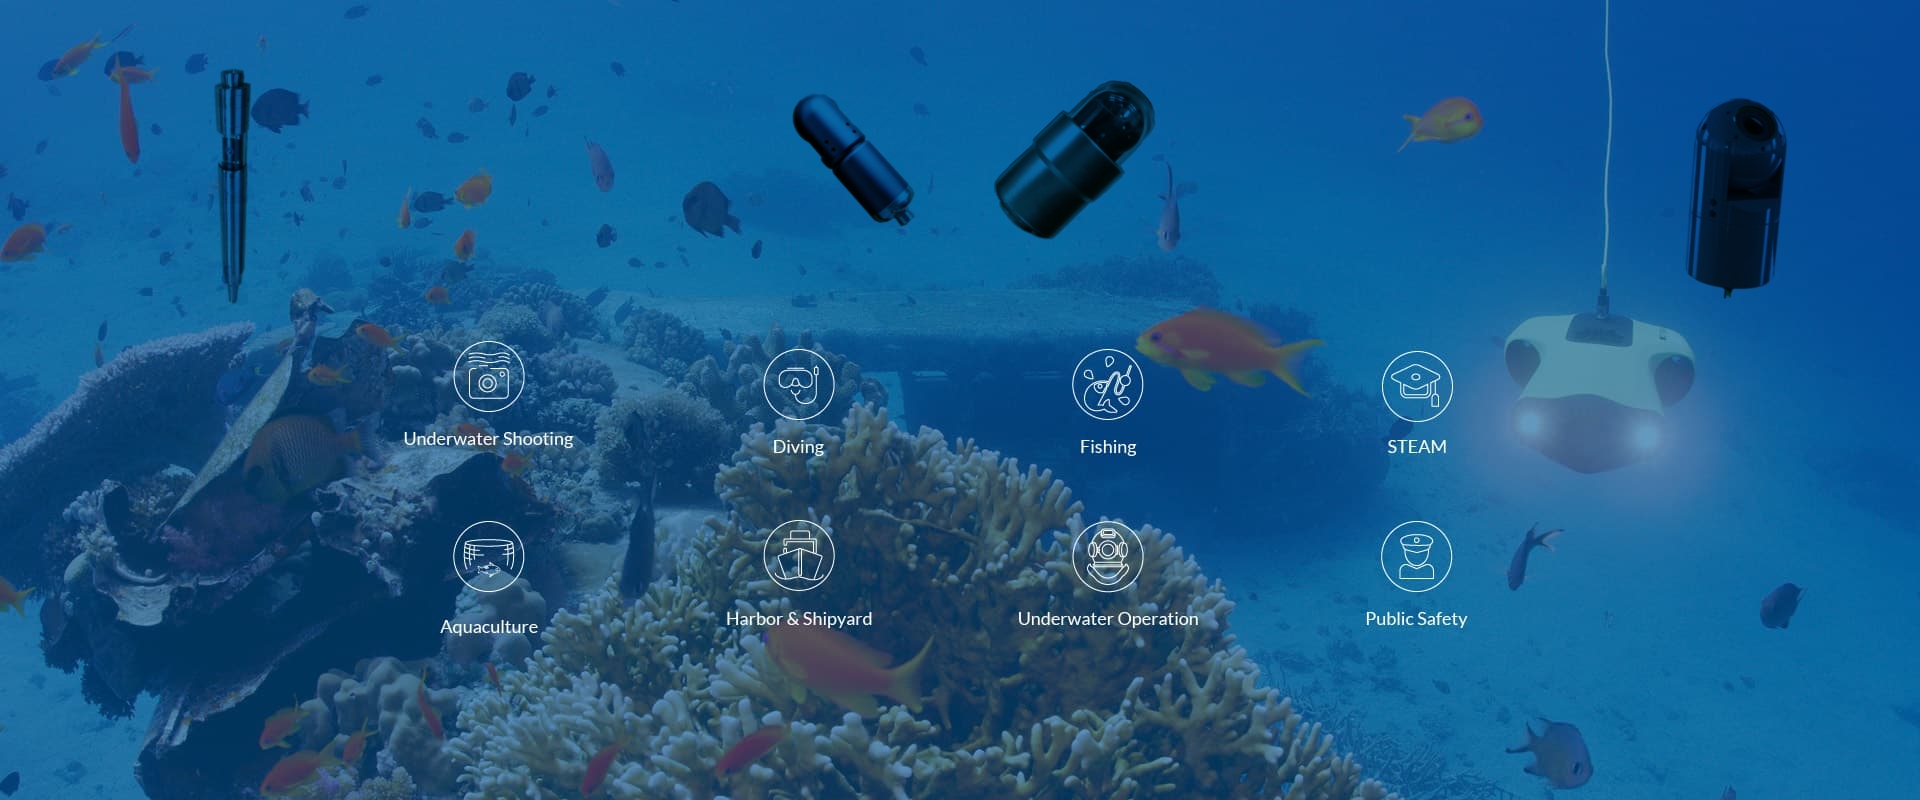 The Best Underwater Camera Maunfacture